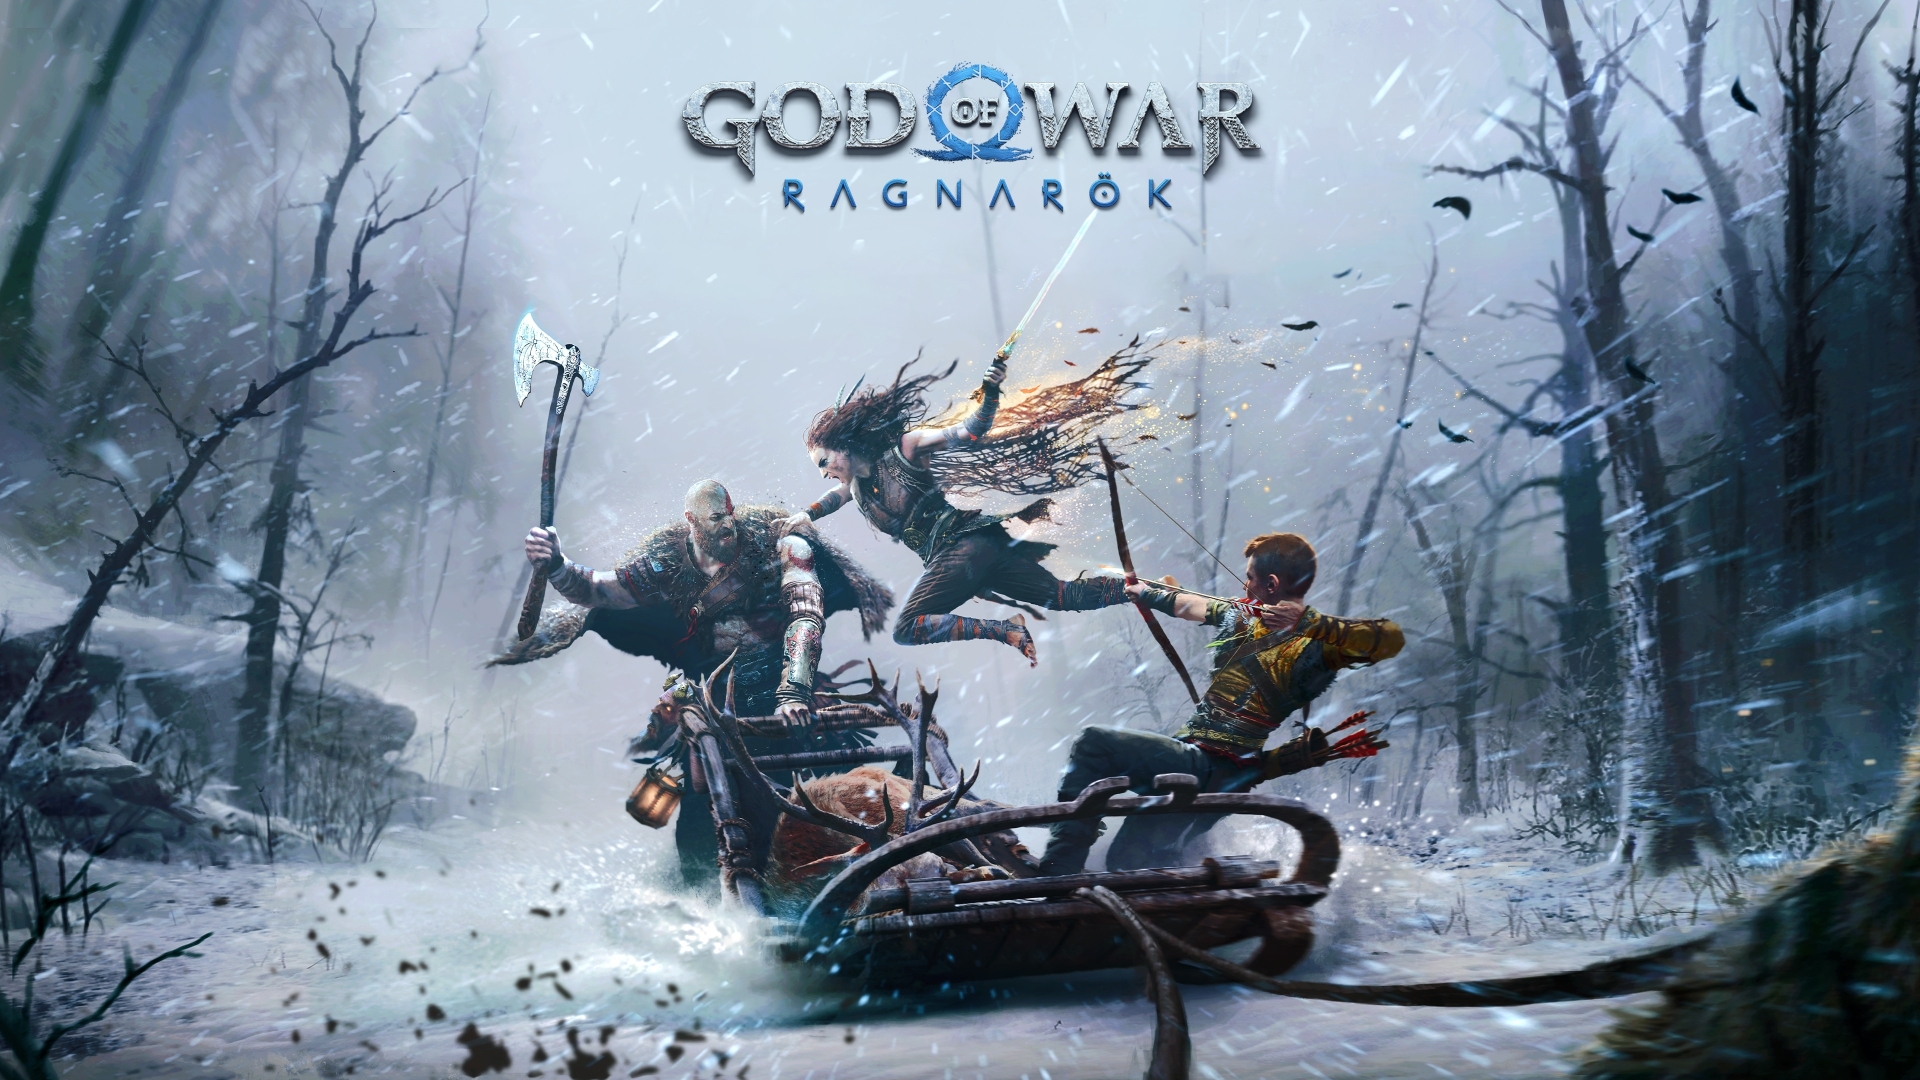 download free god of war ragnarök reddit